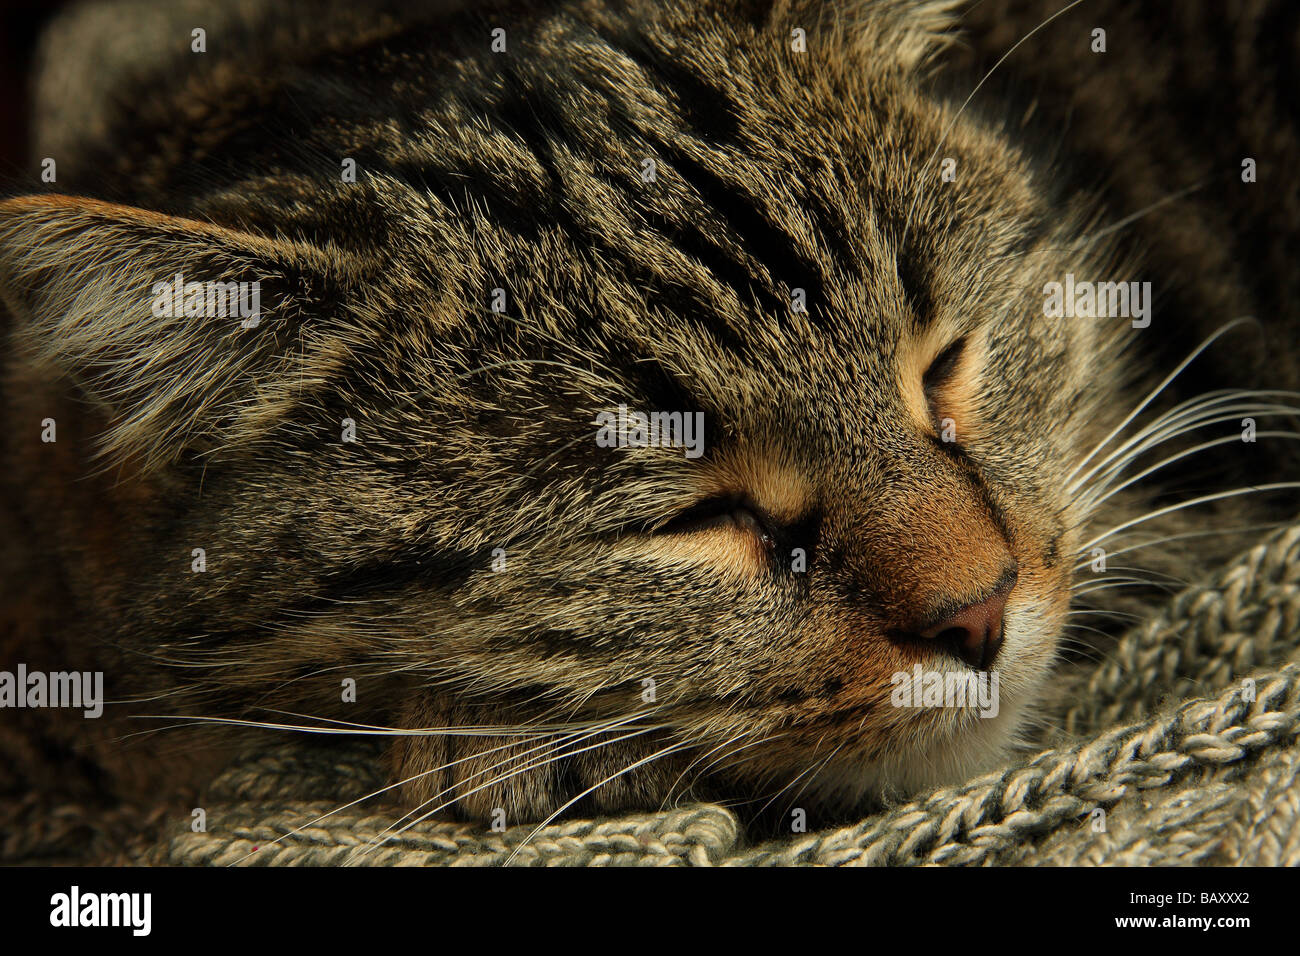 Primer plano de un joven gato atigrado con su cabeza descansando sobre un suéter ojos cerrados Foto de stock